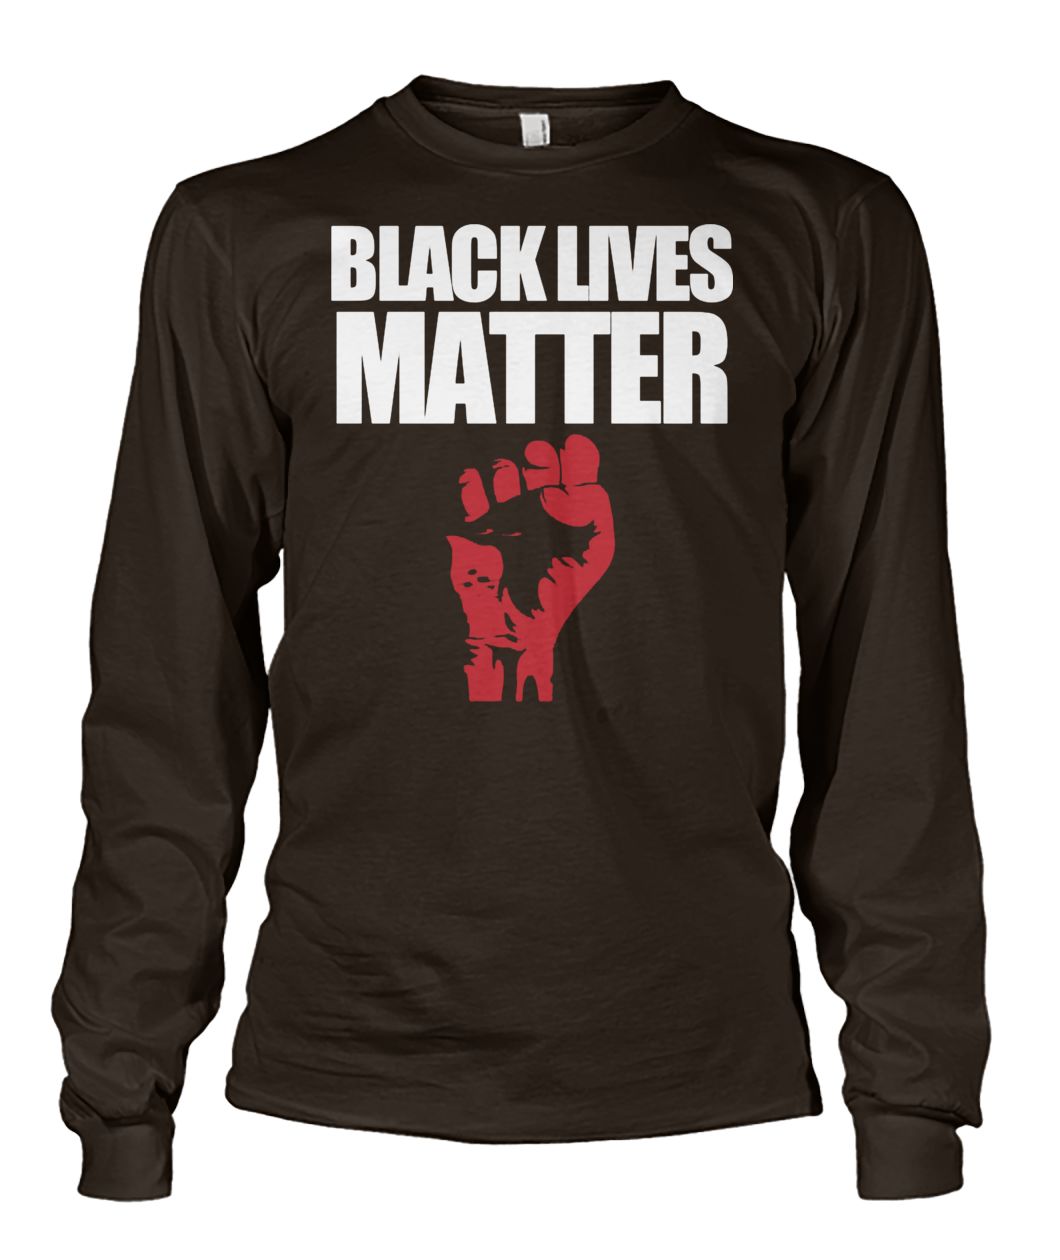 Black lives matter revolution movement unisex long sleeve